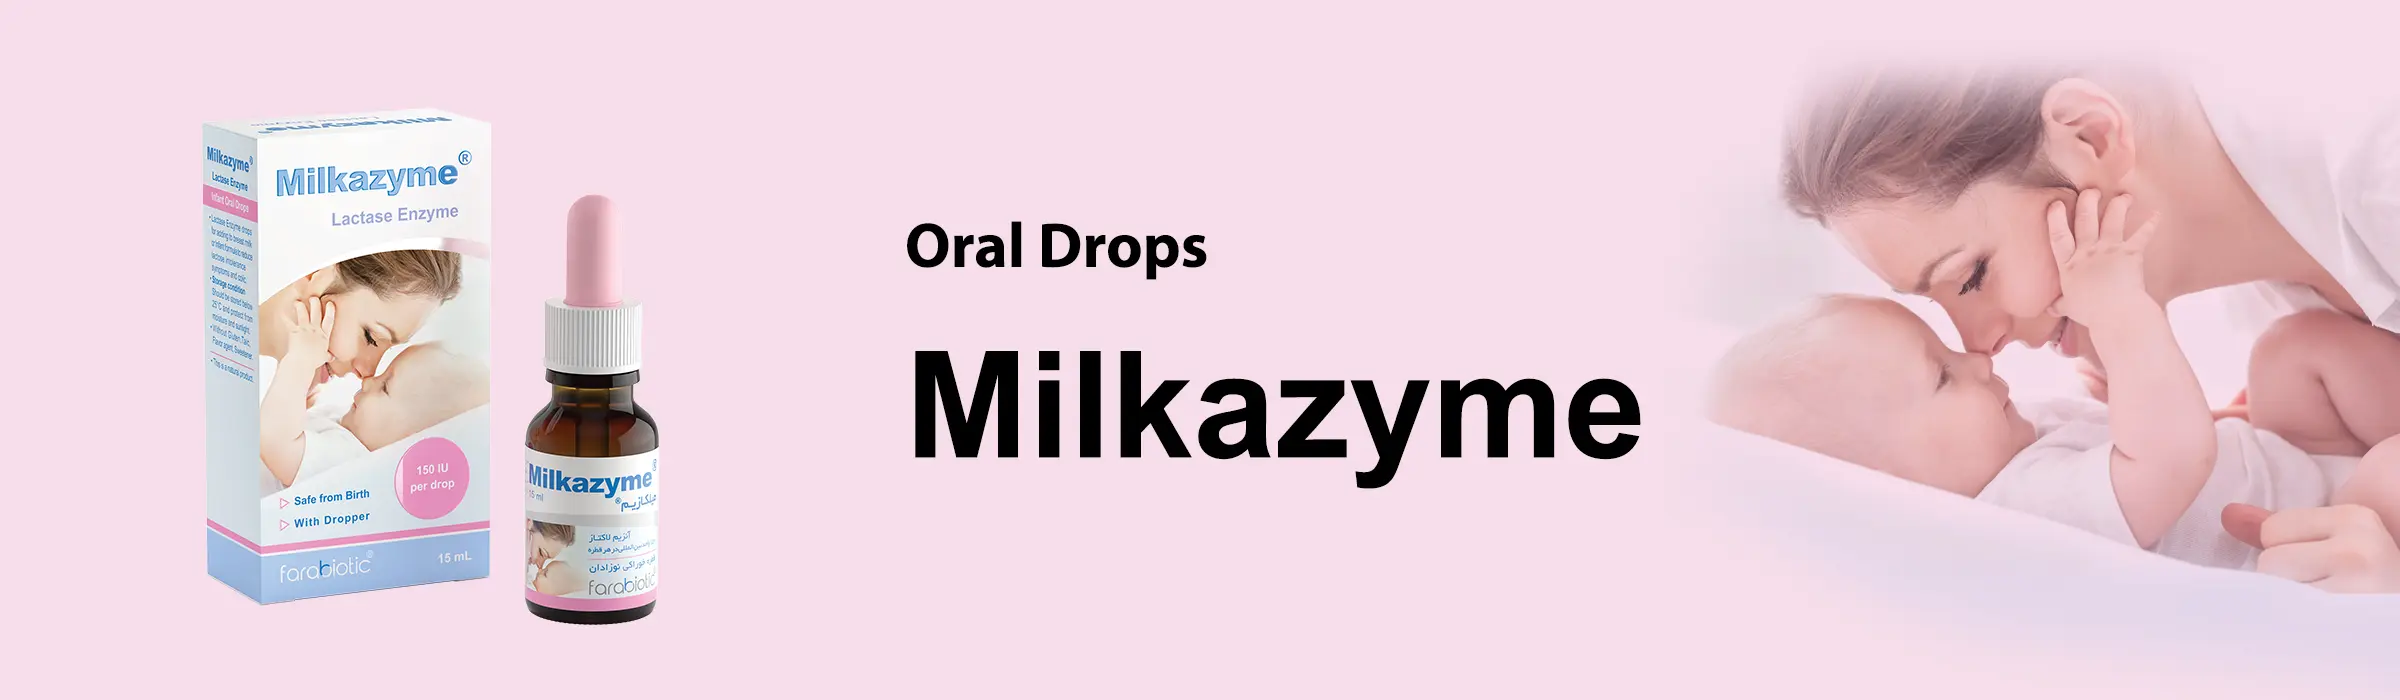 milkazyme